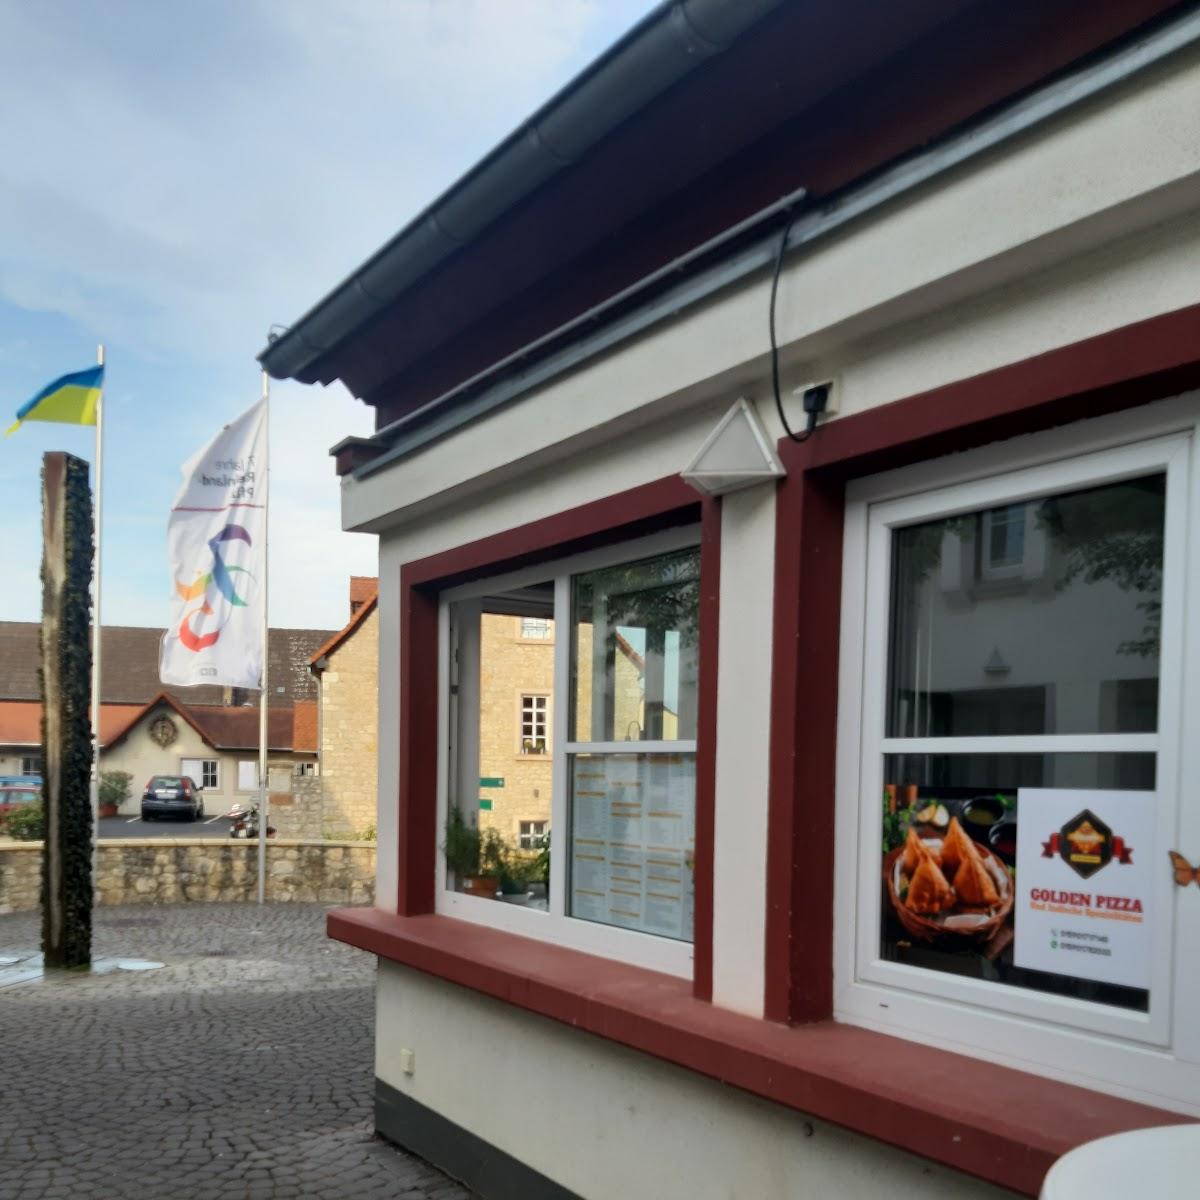 Restaurant "Golden Pizza und Indische Spezialitäten" in Essenheim